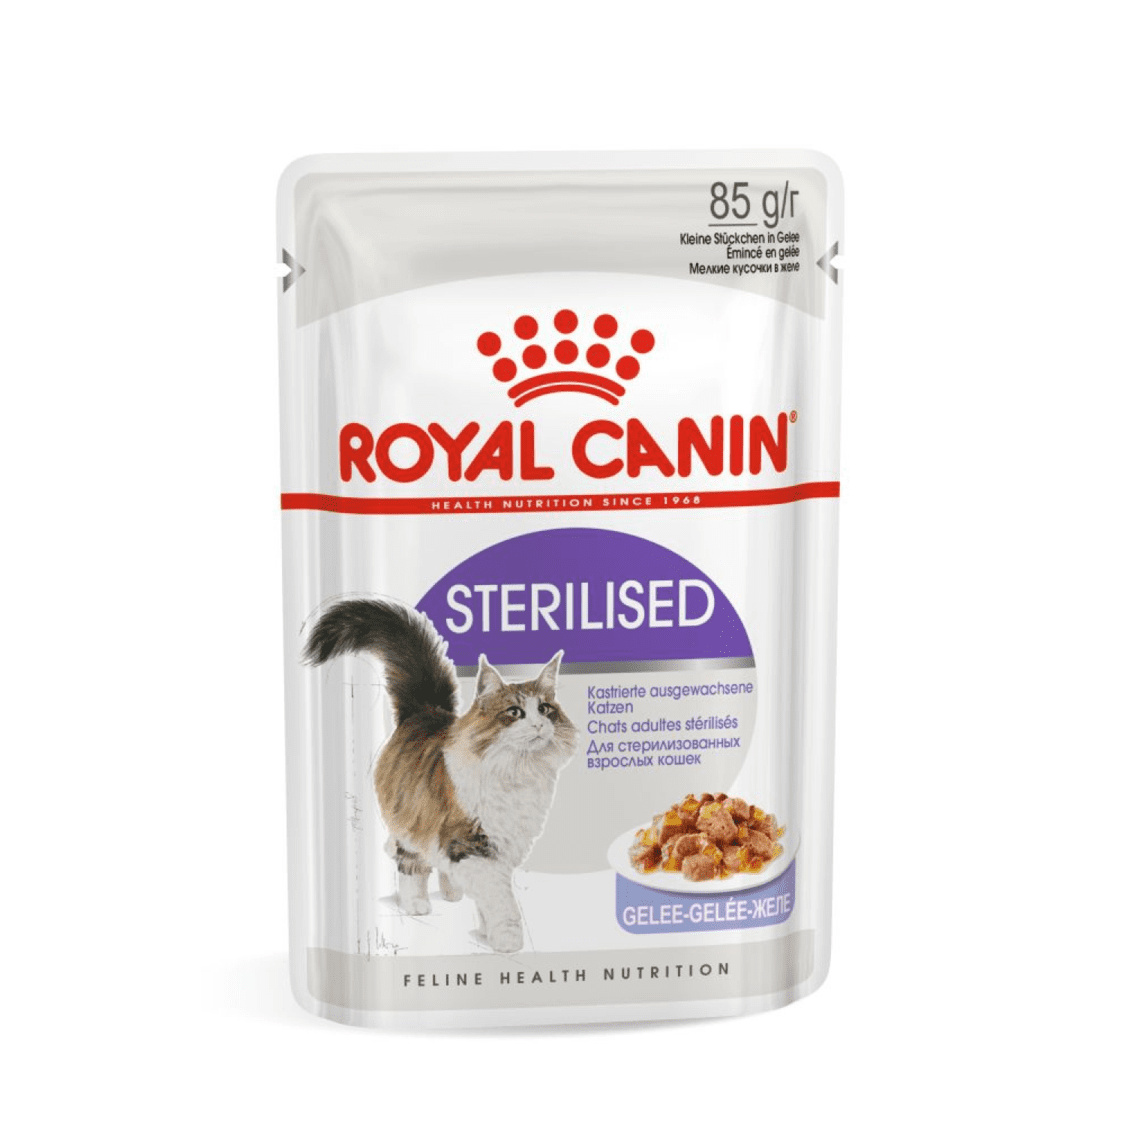 Royal Canin паучи Royal Canin паучи кусочки в желе для кастрированных кошек 1-7лет (28 шт.) royal canin паучи royal canin паучи кусочки в соусе для кастрированных кошек 1 7лет 28 шт